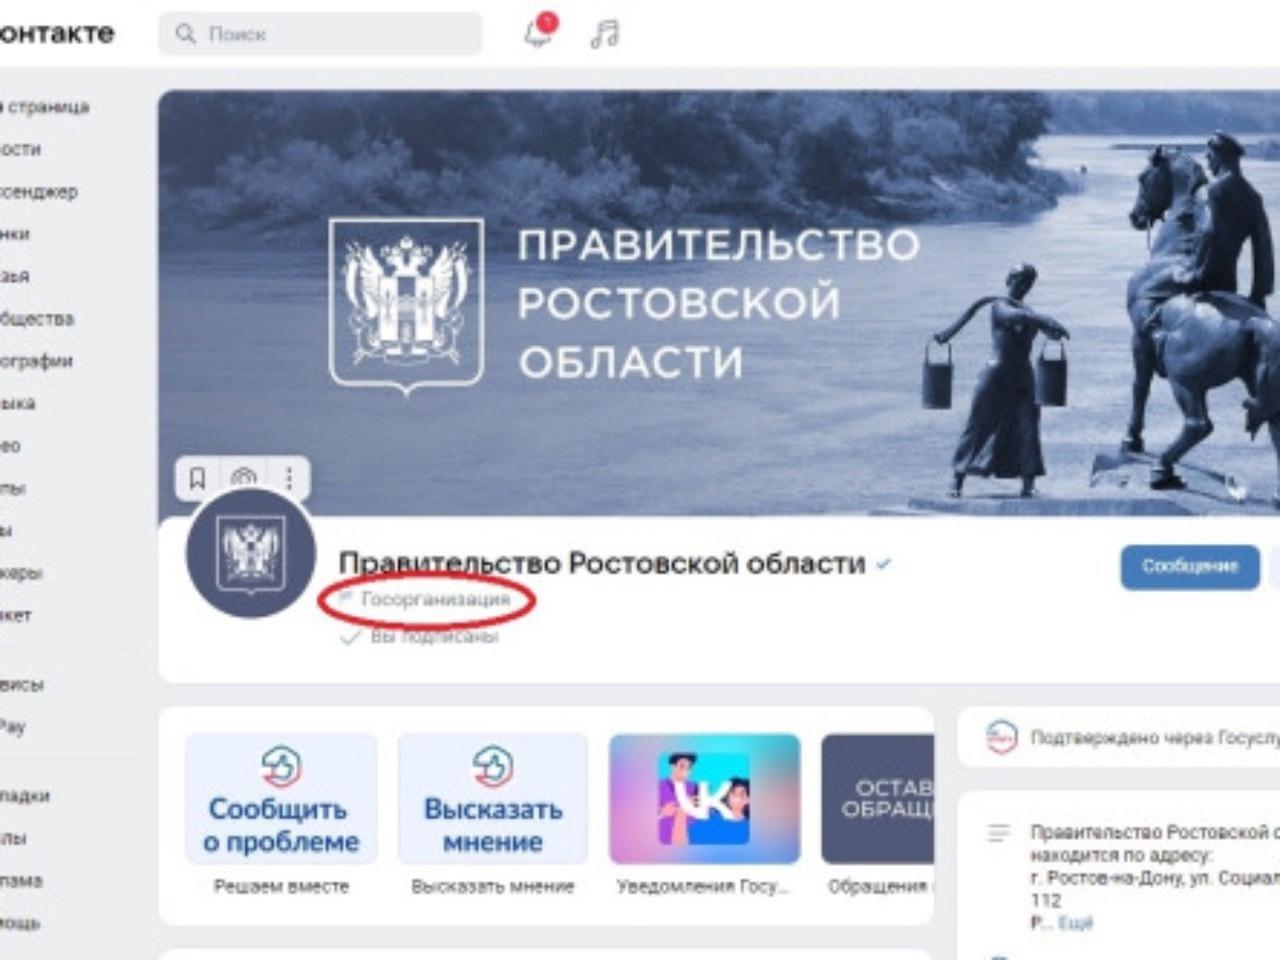 На паблики госучреждений Ростовской области подписаны около двух миллионов человек